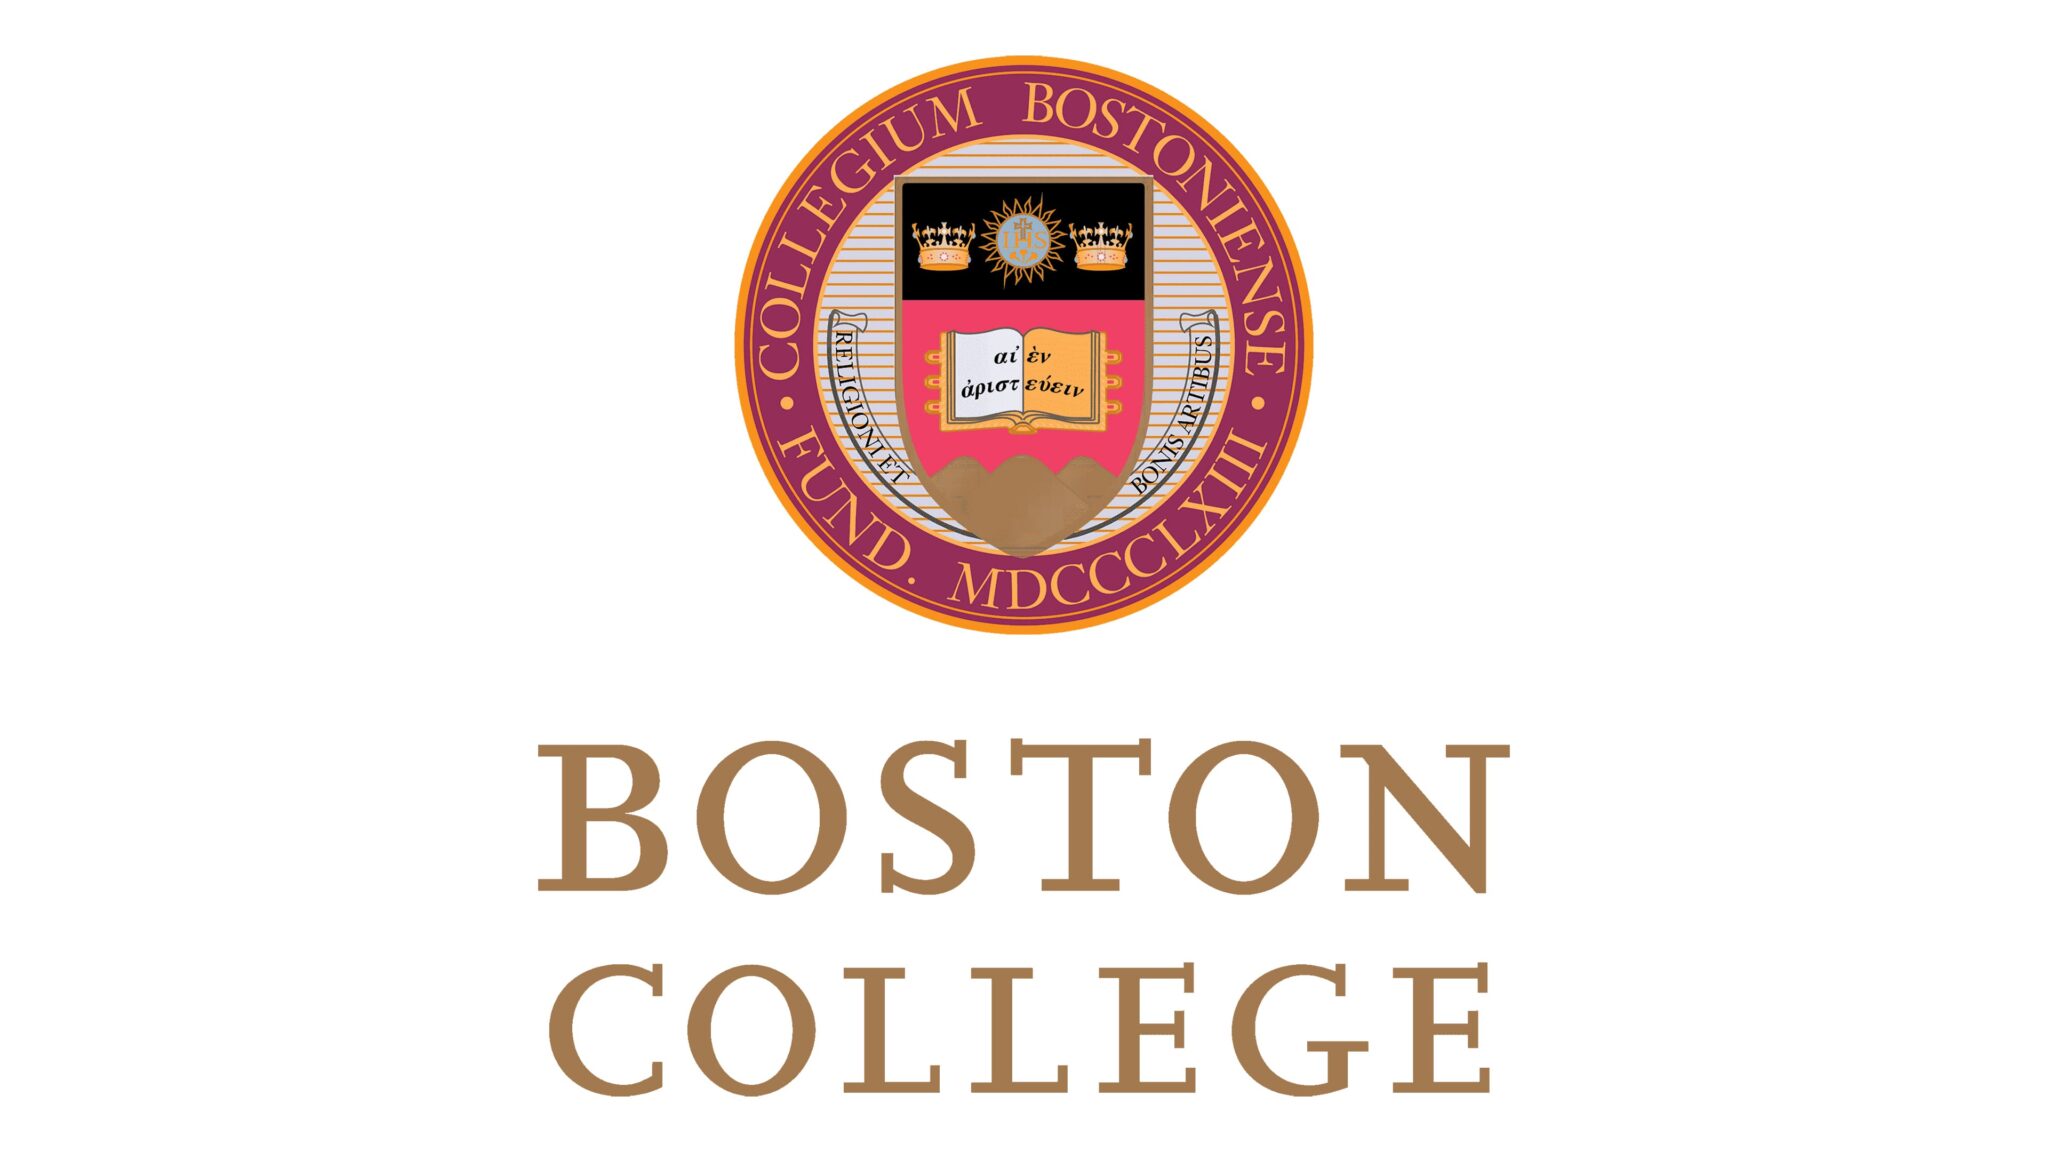 Studiendekan des Boston College sendet Brief an Sportler bezüglich Ermittlungen wegen Belästigung